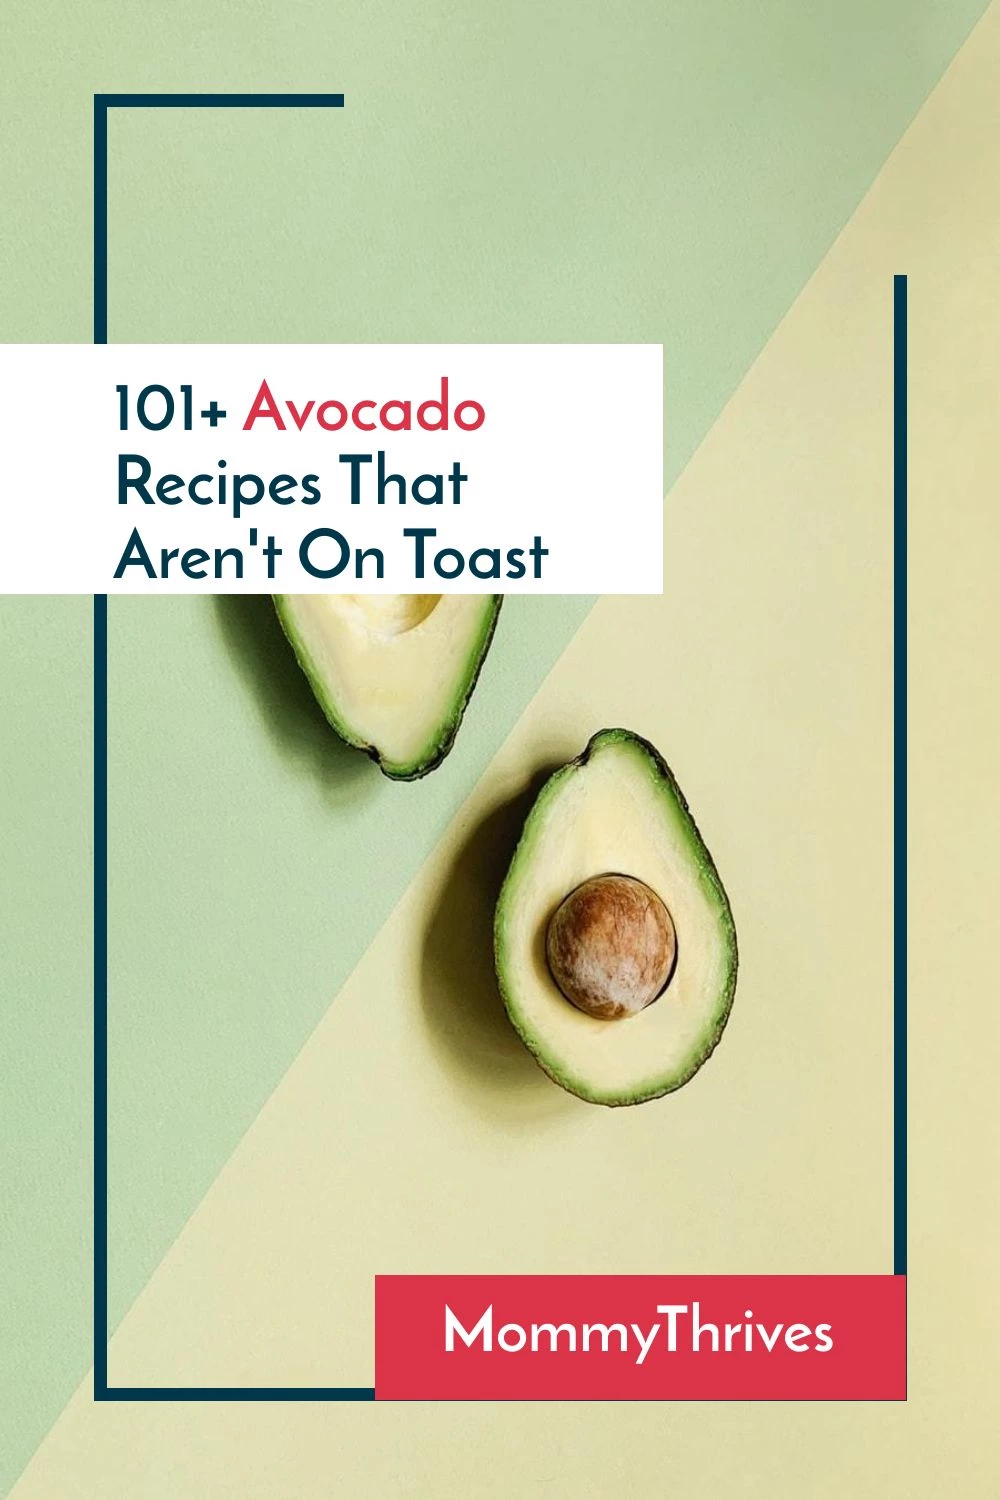 Avocado Recipes - Easy Avocado Recipes To Make At Any Meal - Over 101 Avocado Recipes That Aren't On Toast